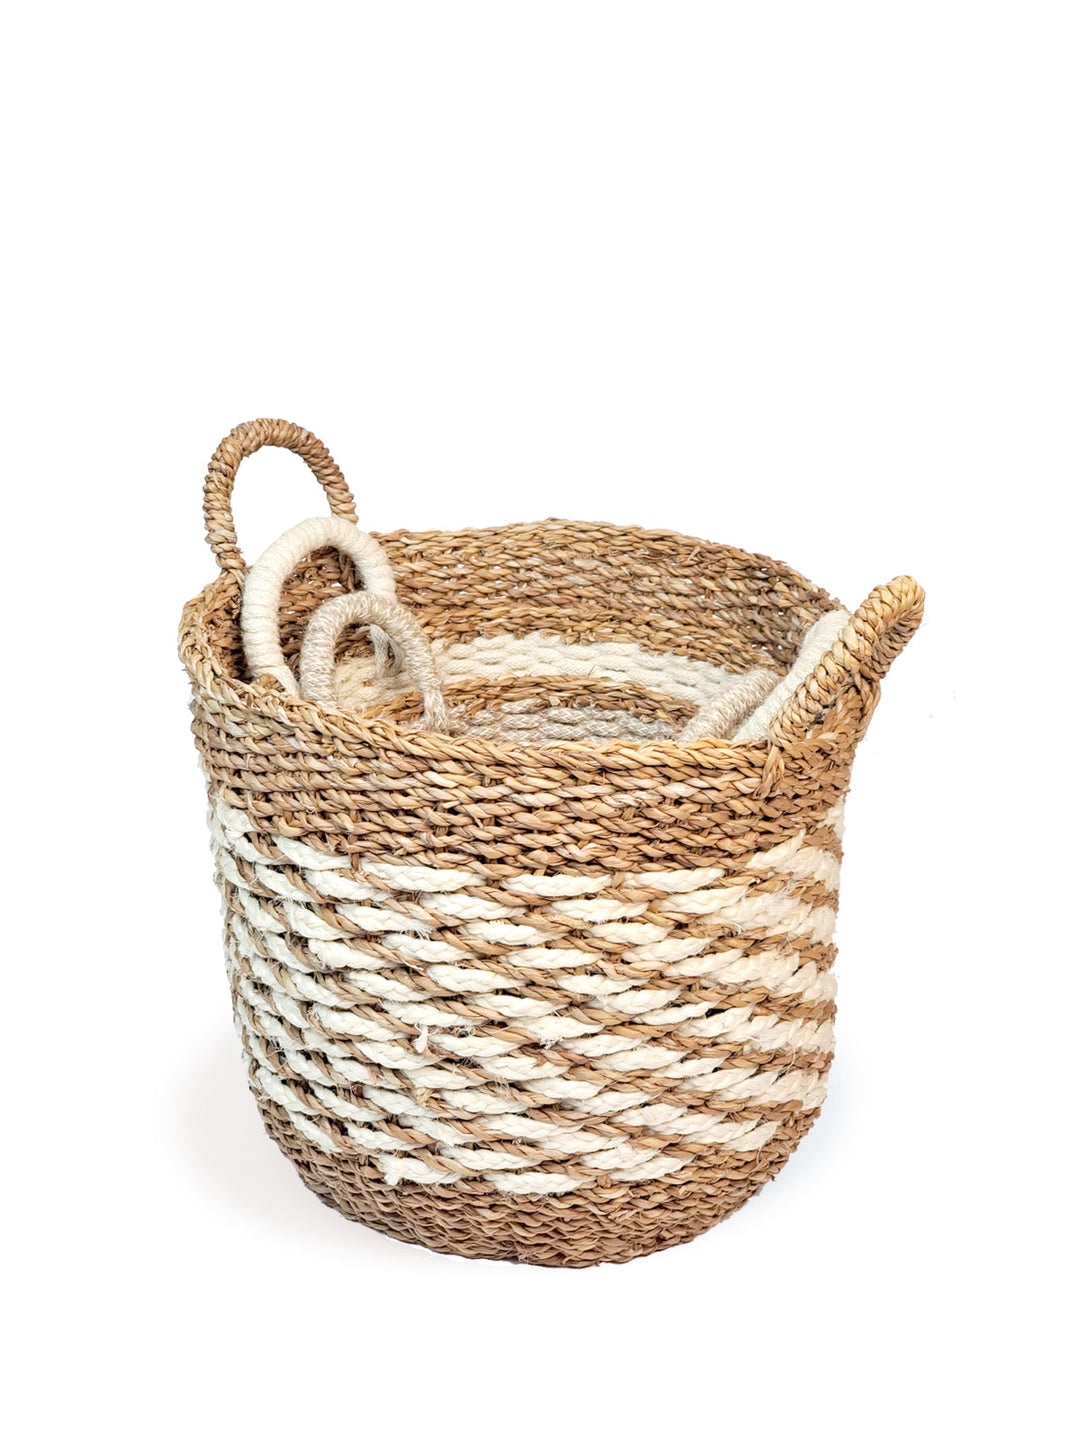 Ula Mesh Basket - Natural Hand Made -4